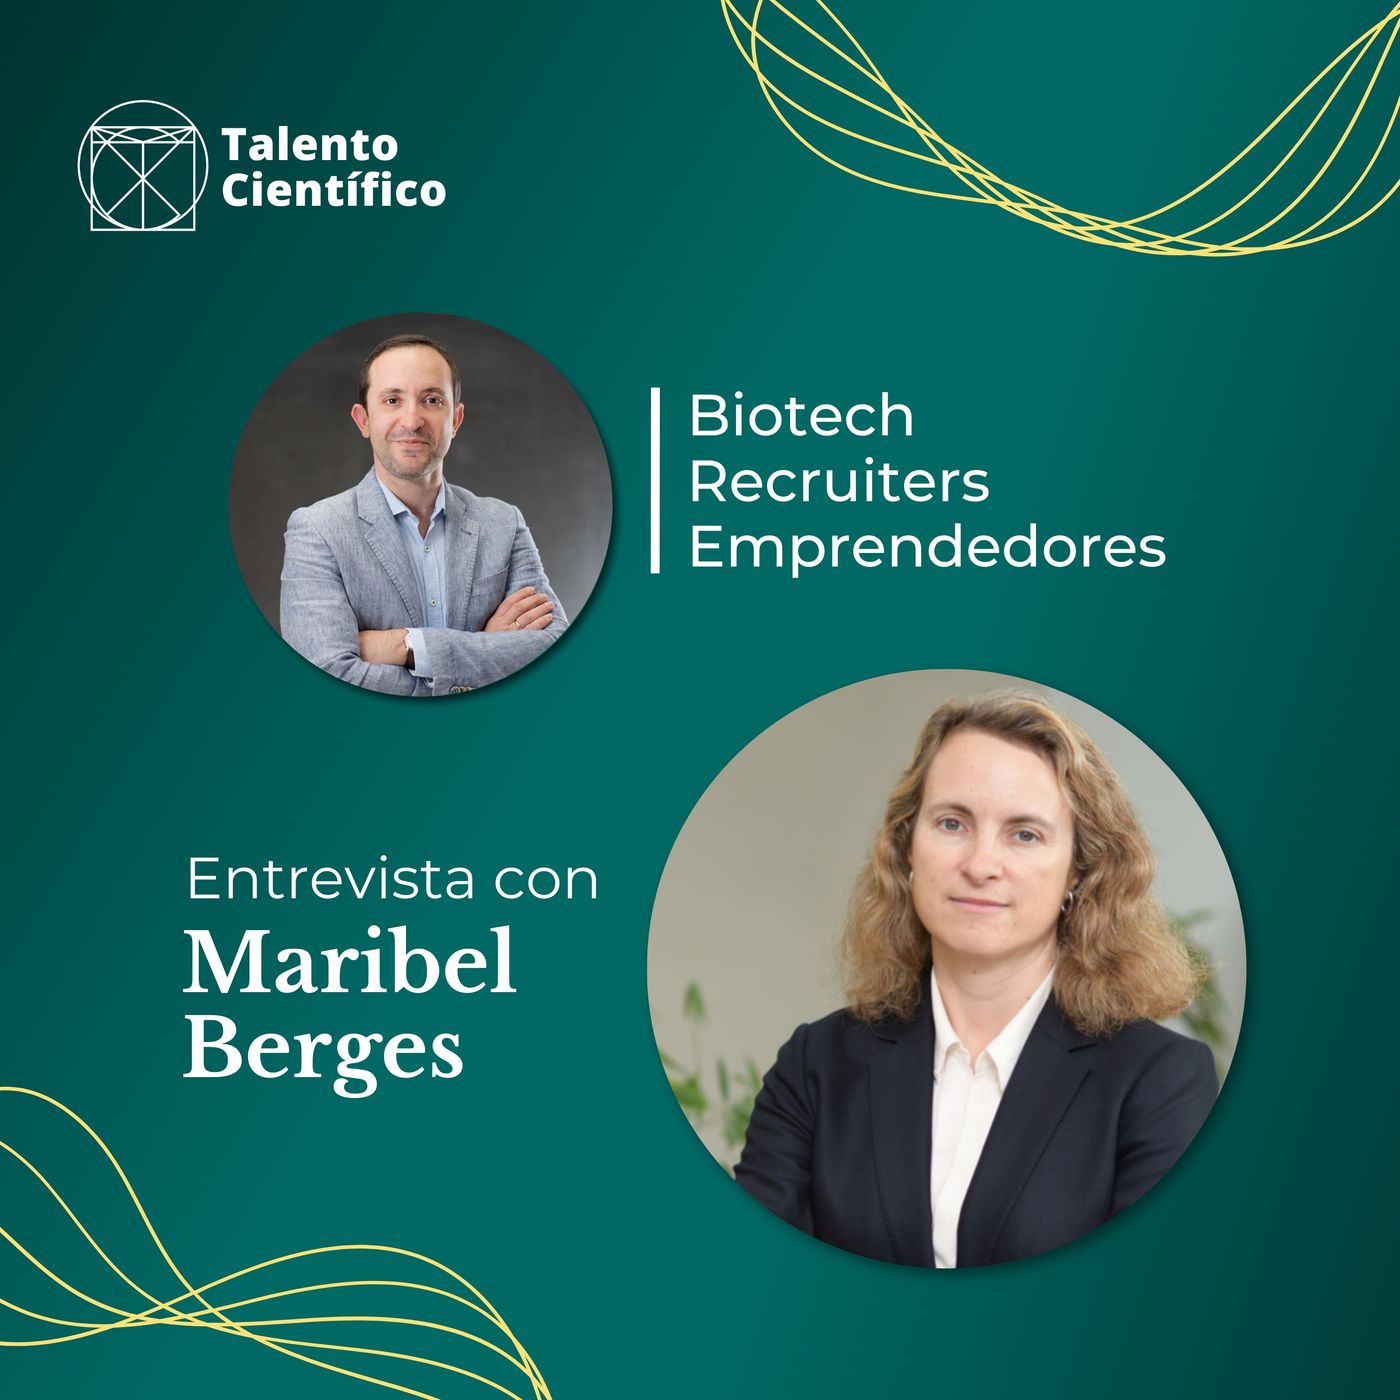 Ciencia, emprendimiento e innovación - Entrevista con Maribel Berges